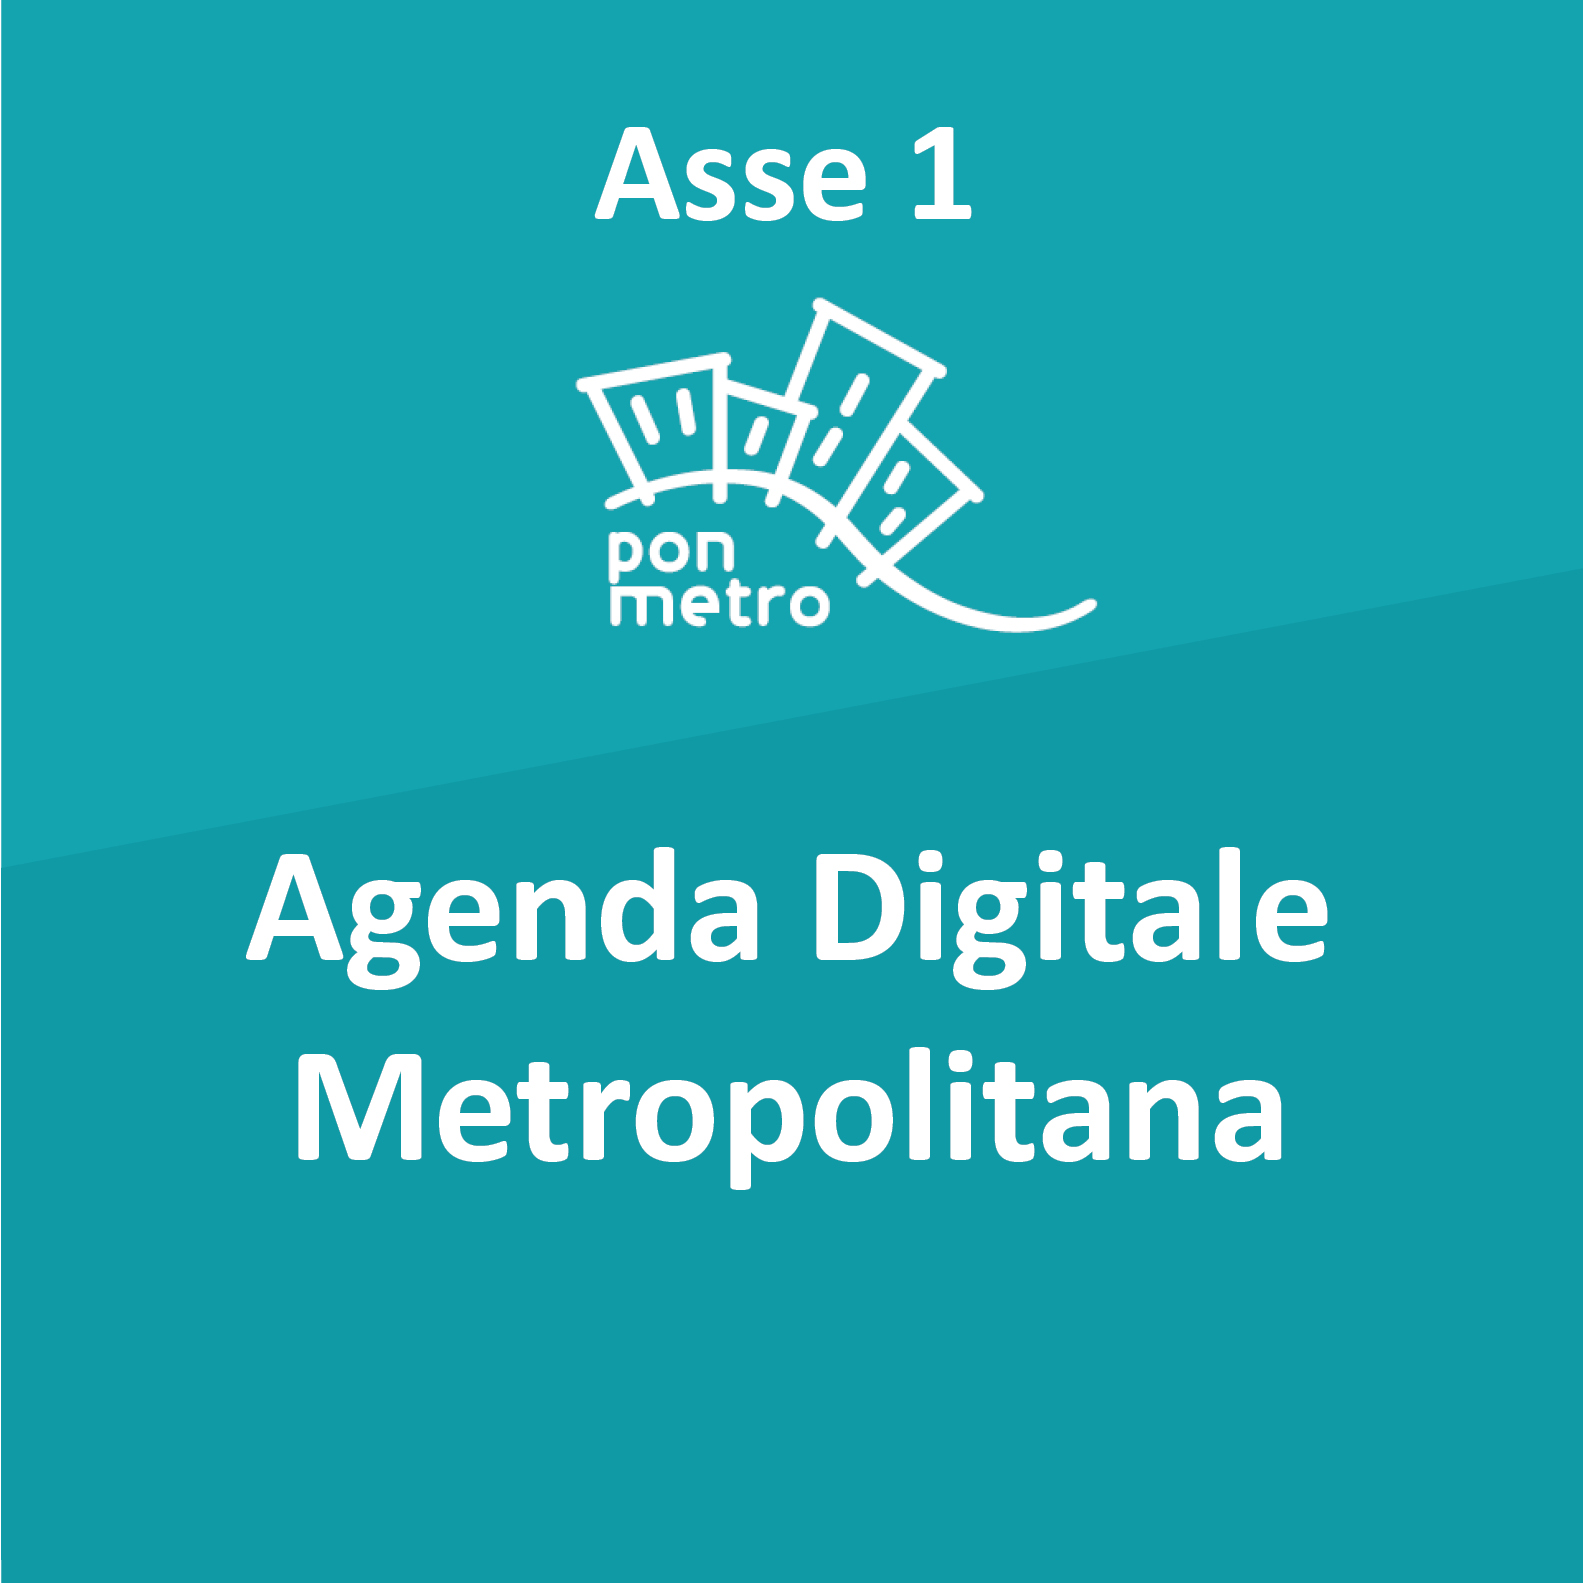 agenda digitale metropolitana